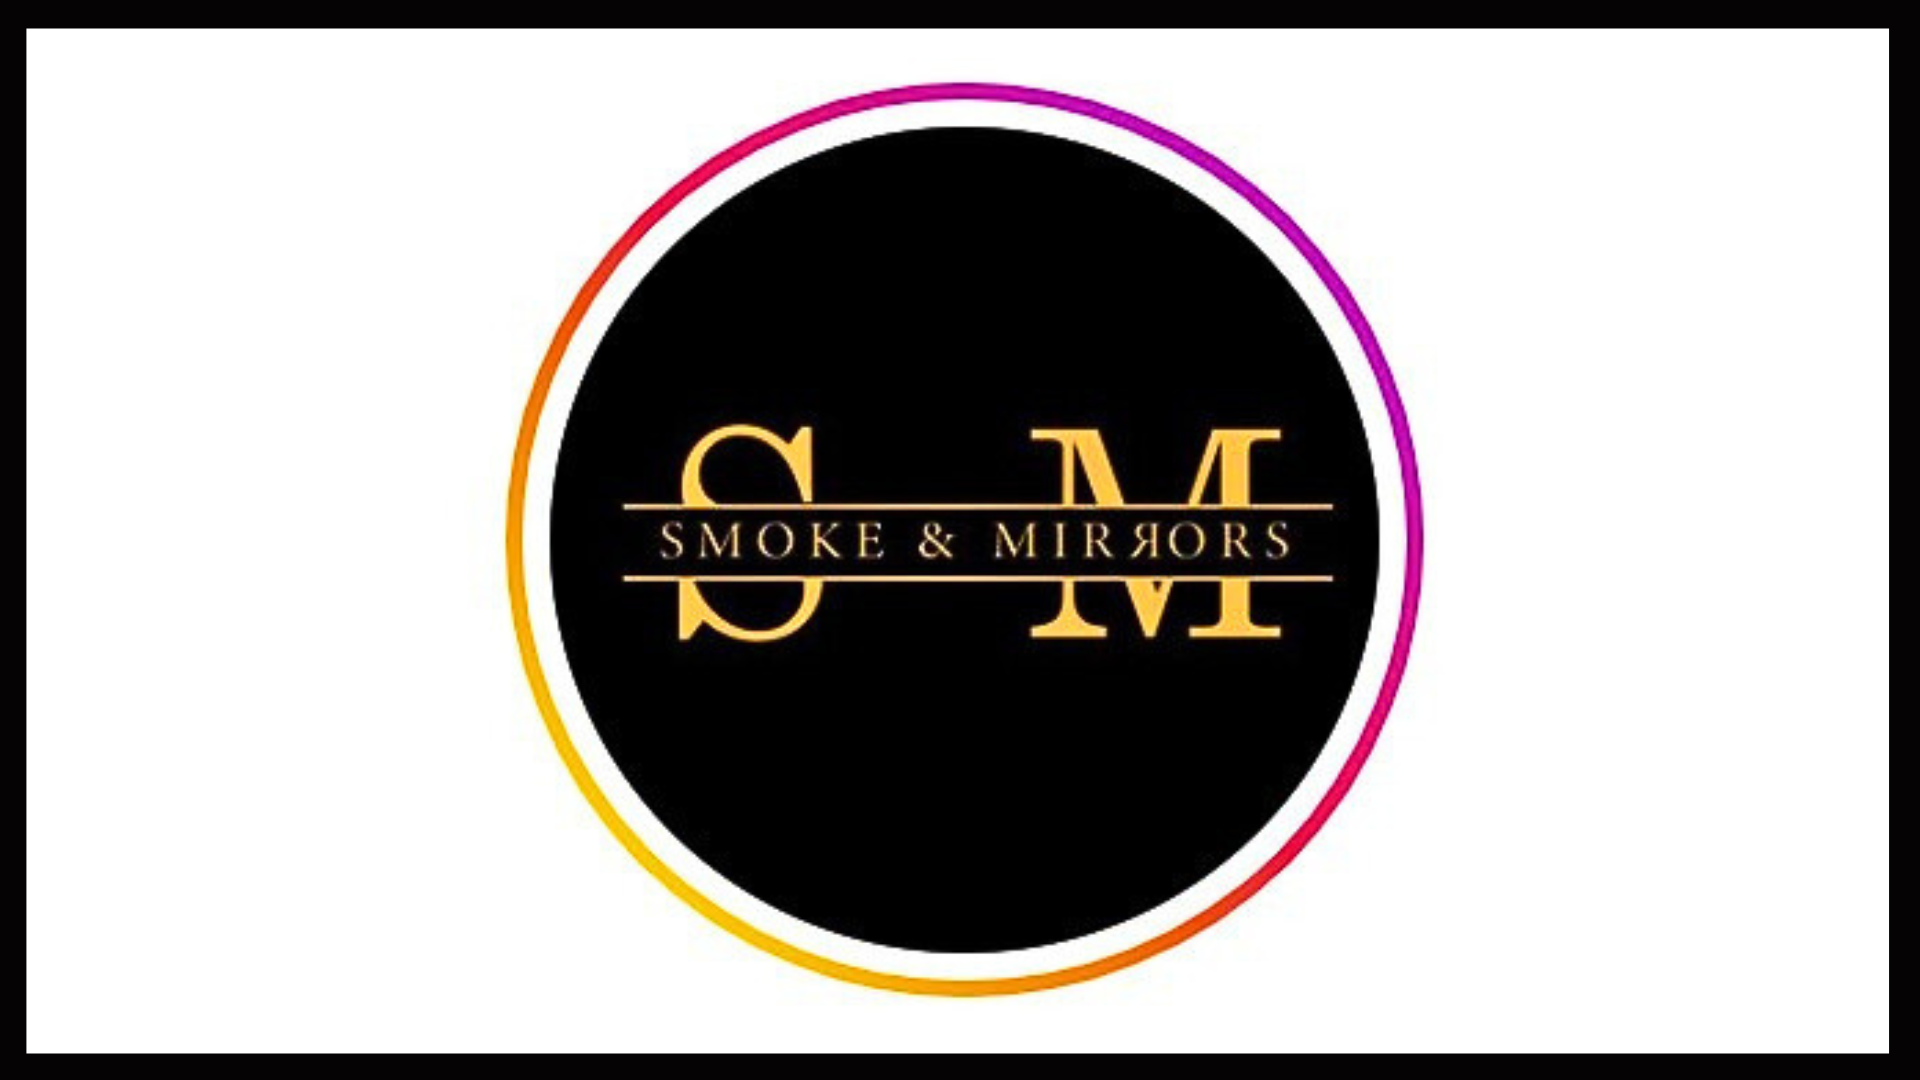 Smoke-and-mirrors-Lekki-restaurant-and-lounge